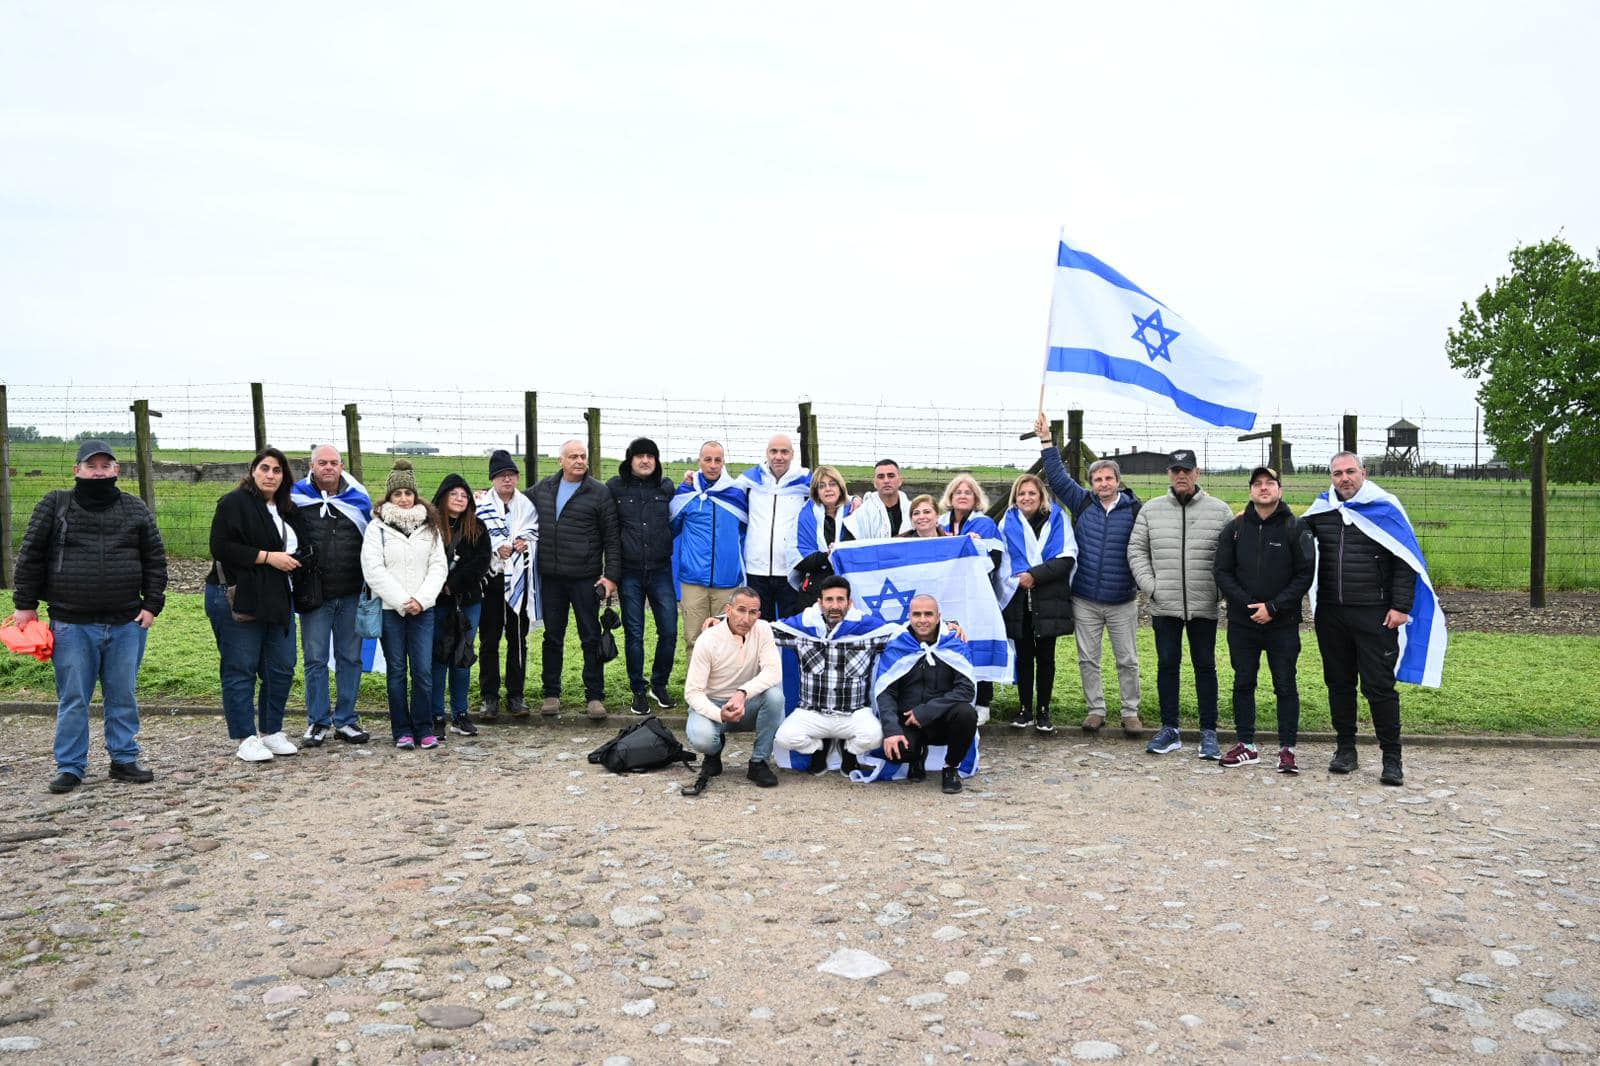 תצלום של כל משתתפי המסע אוחזים בדגל ישראל